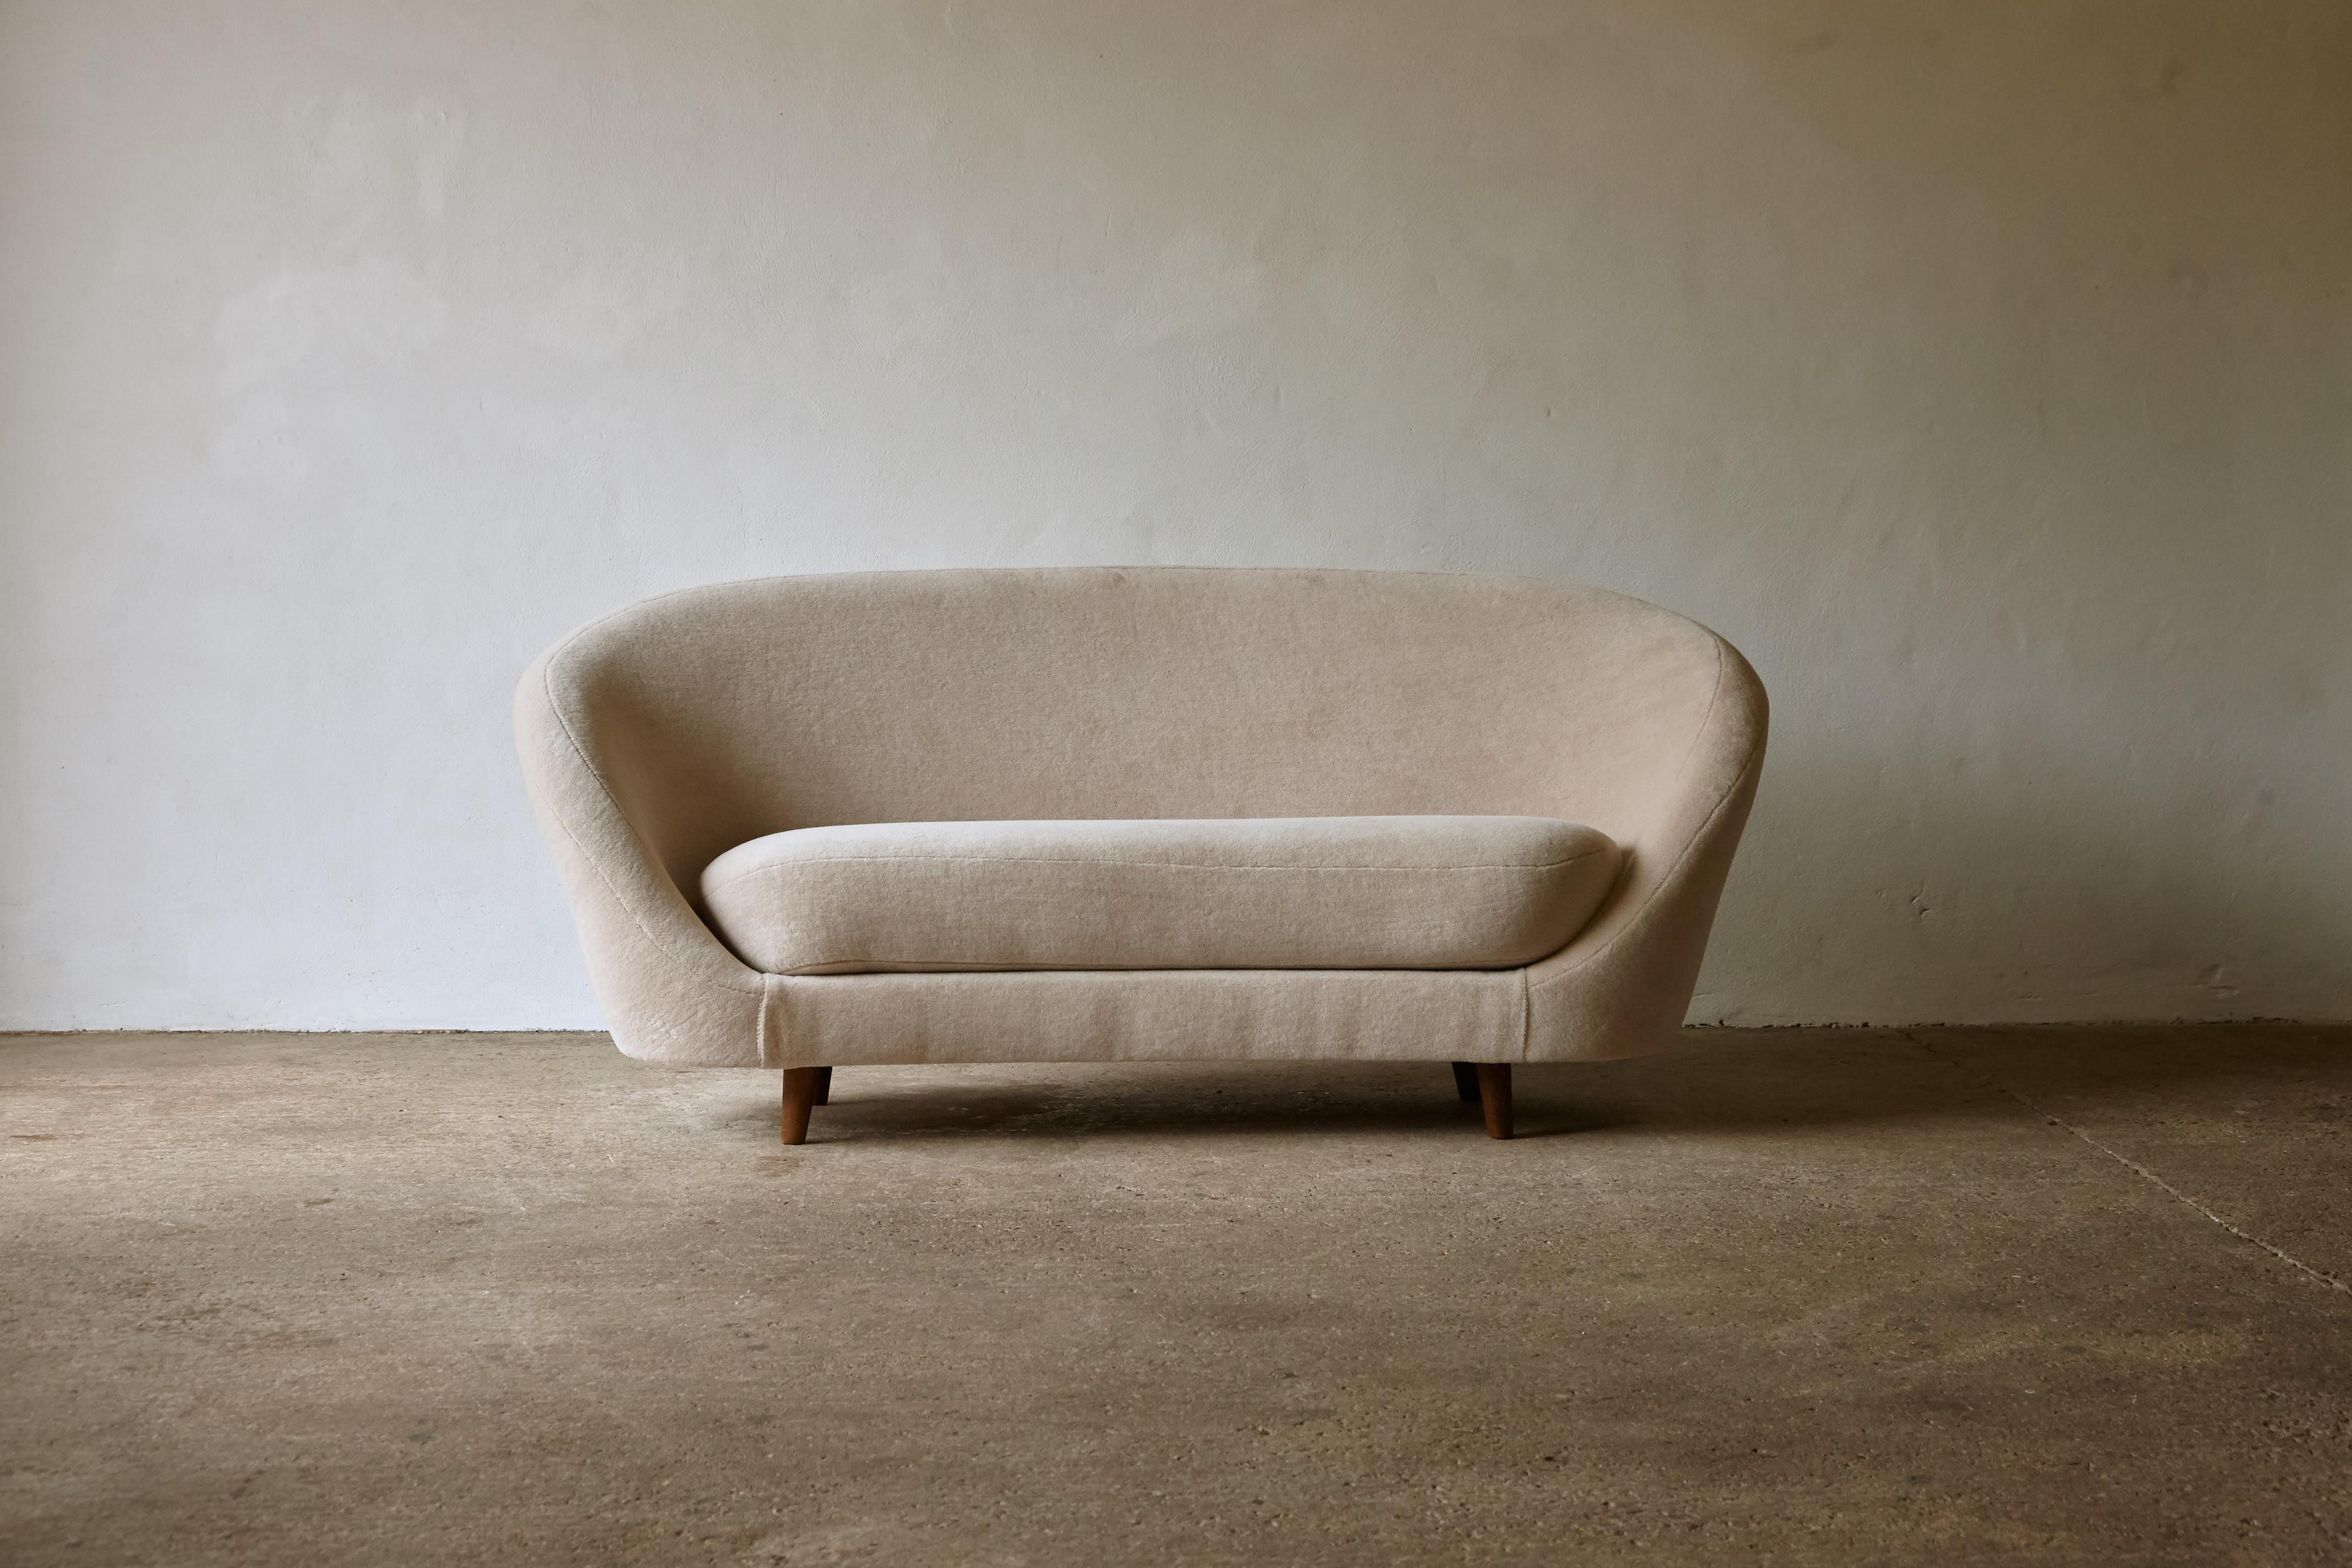 Ein großartiges und ungewöhnliches italienisches eiförmiges Sofa aus den 1950er/1960er Jahren, im Stil von Ico Parisi. Das Sofa wurde mit einem elfenbeinfarbenen, reinen Alpakastoff neu bezogen und hat eine geschwungene, schmale, organische Form.